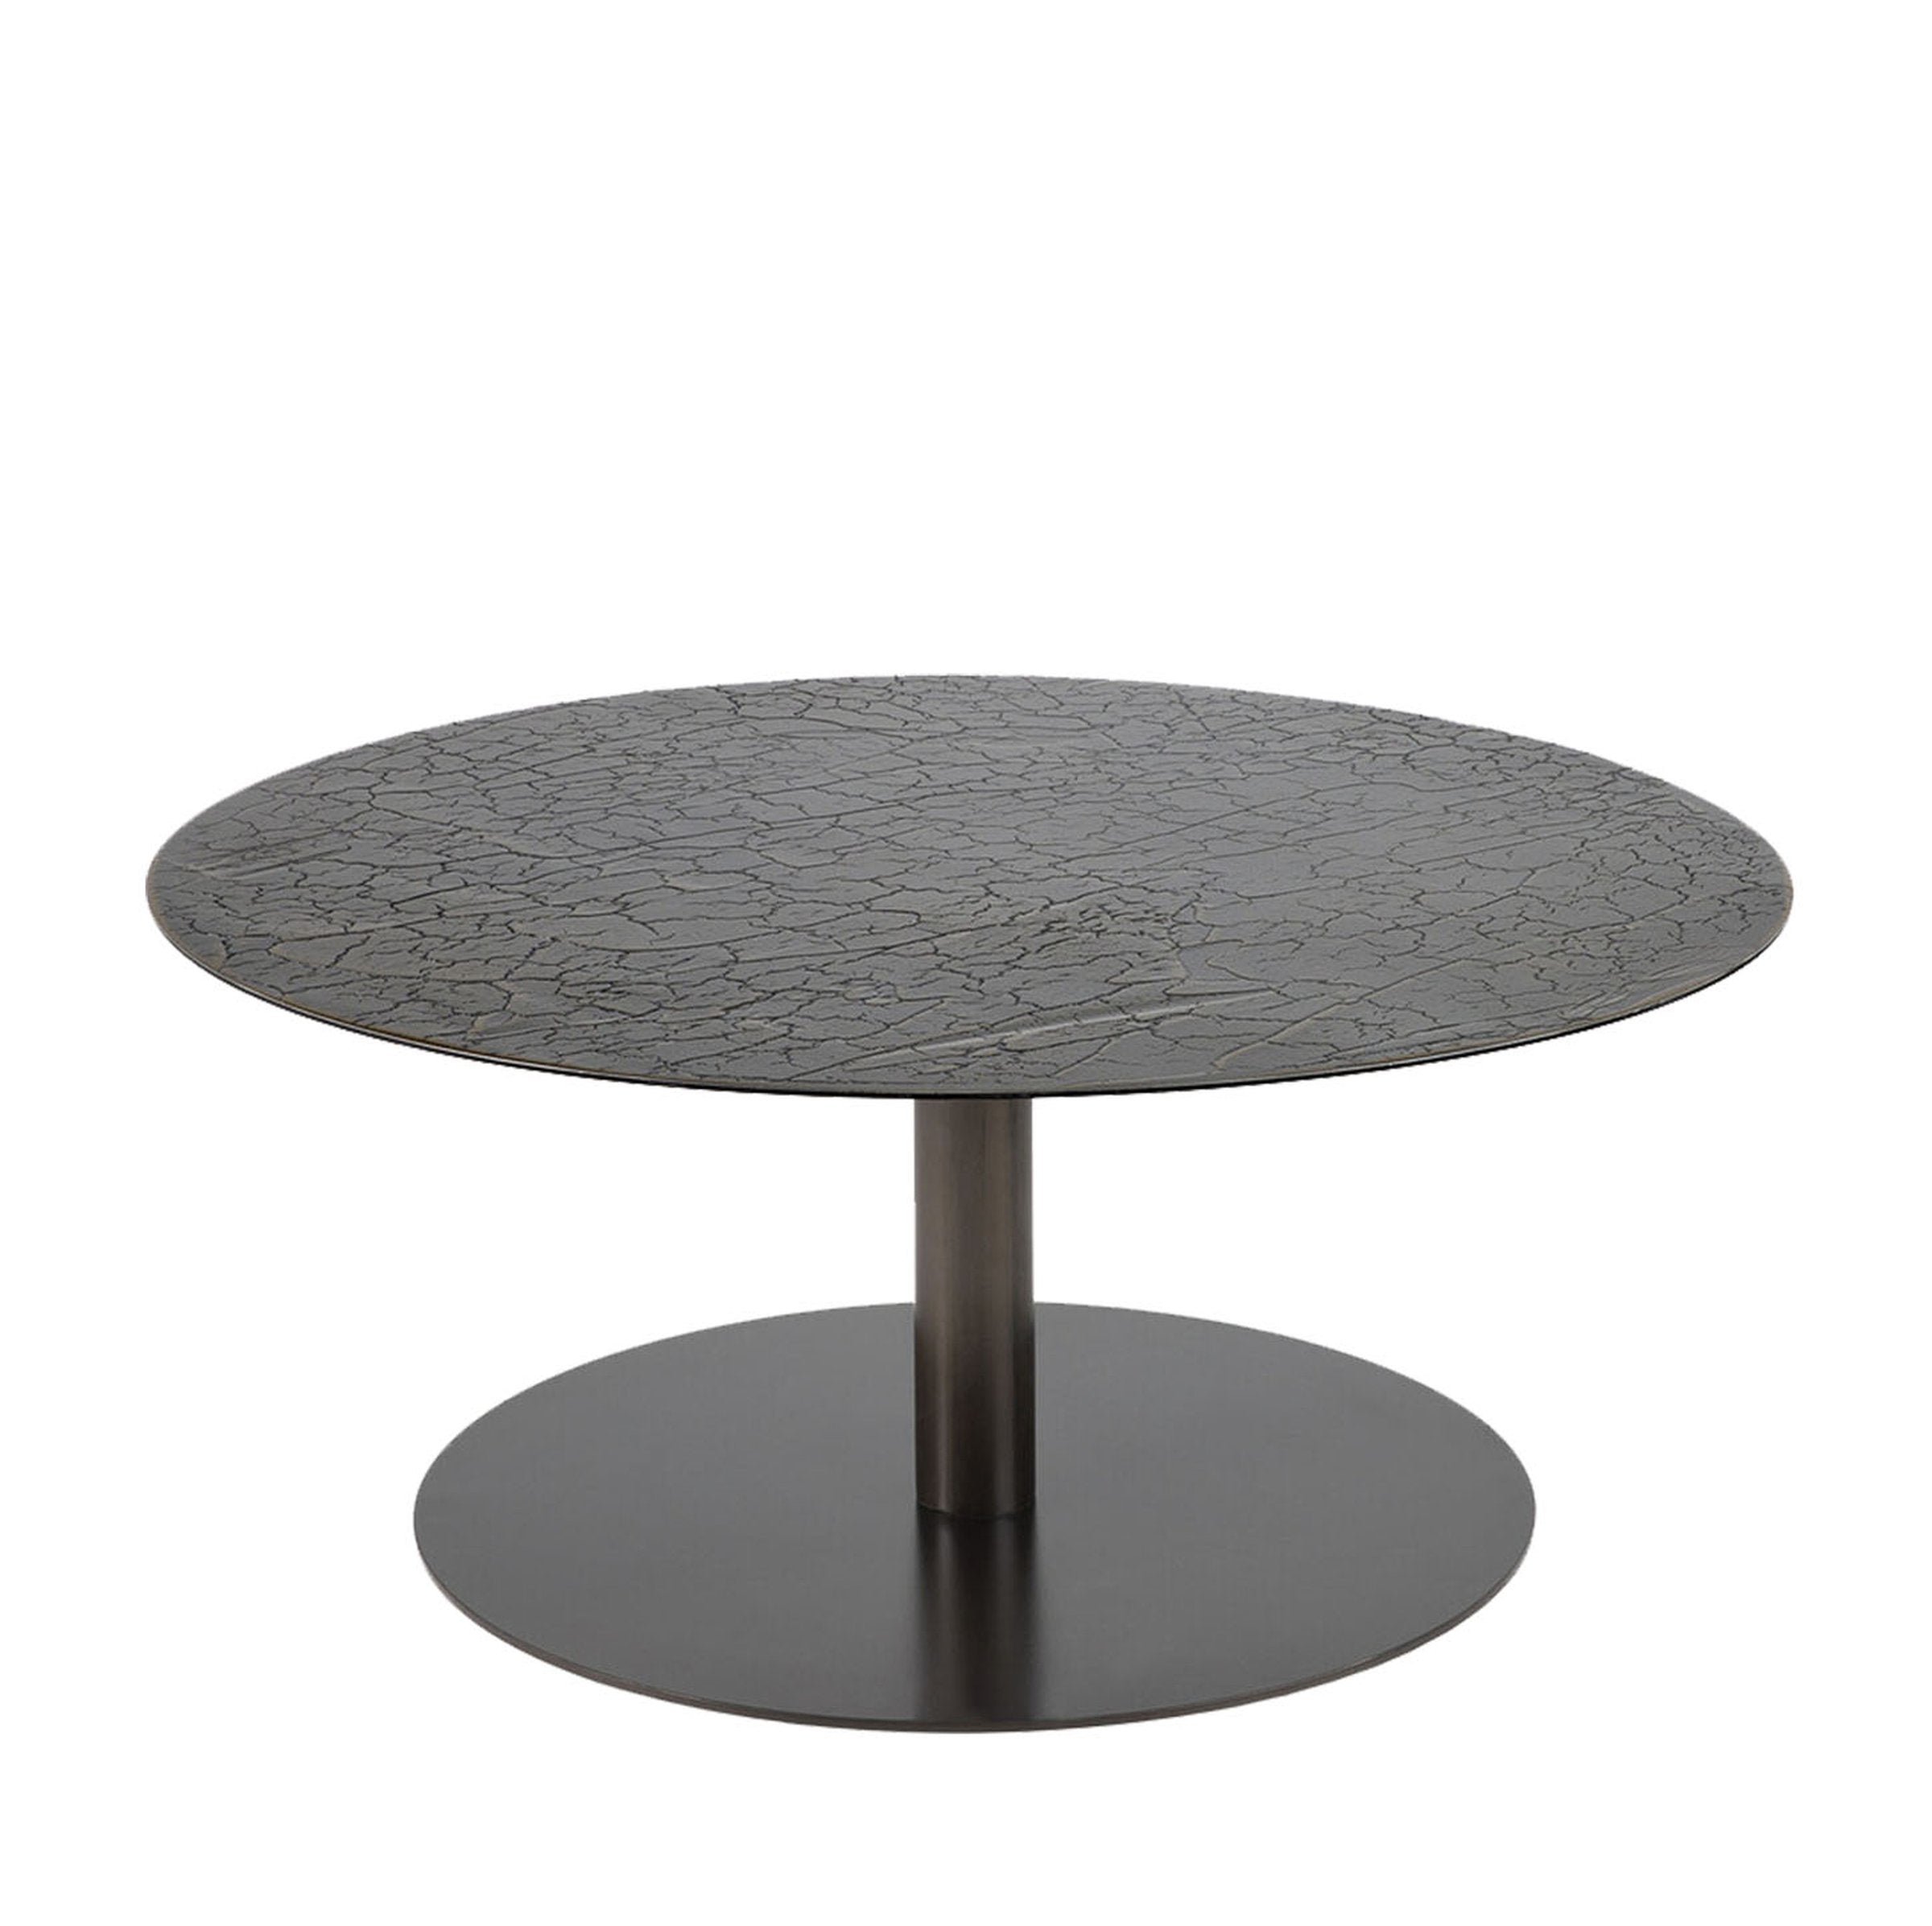 Sphere coffee table